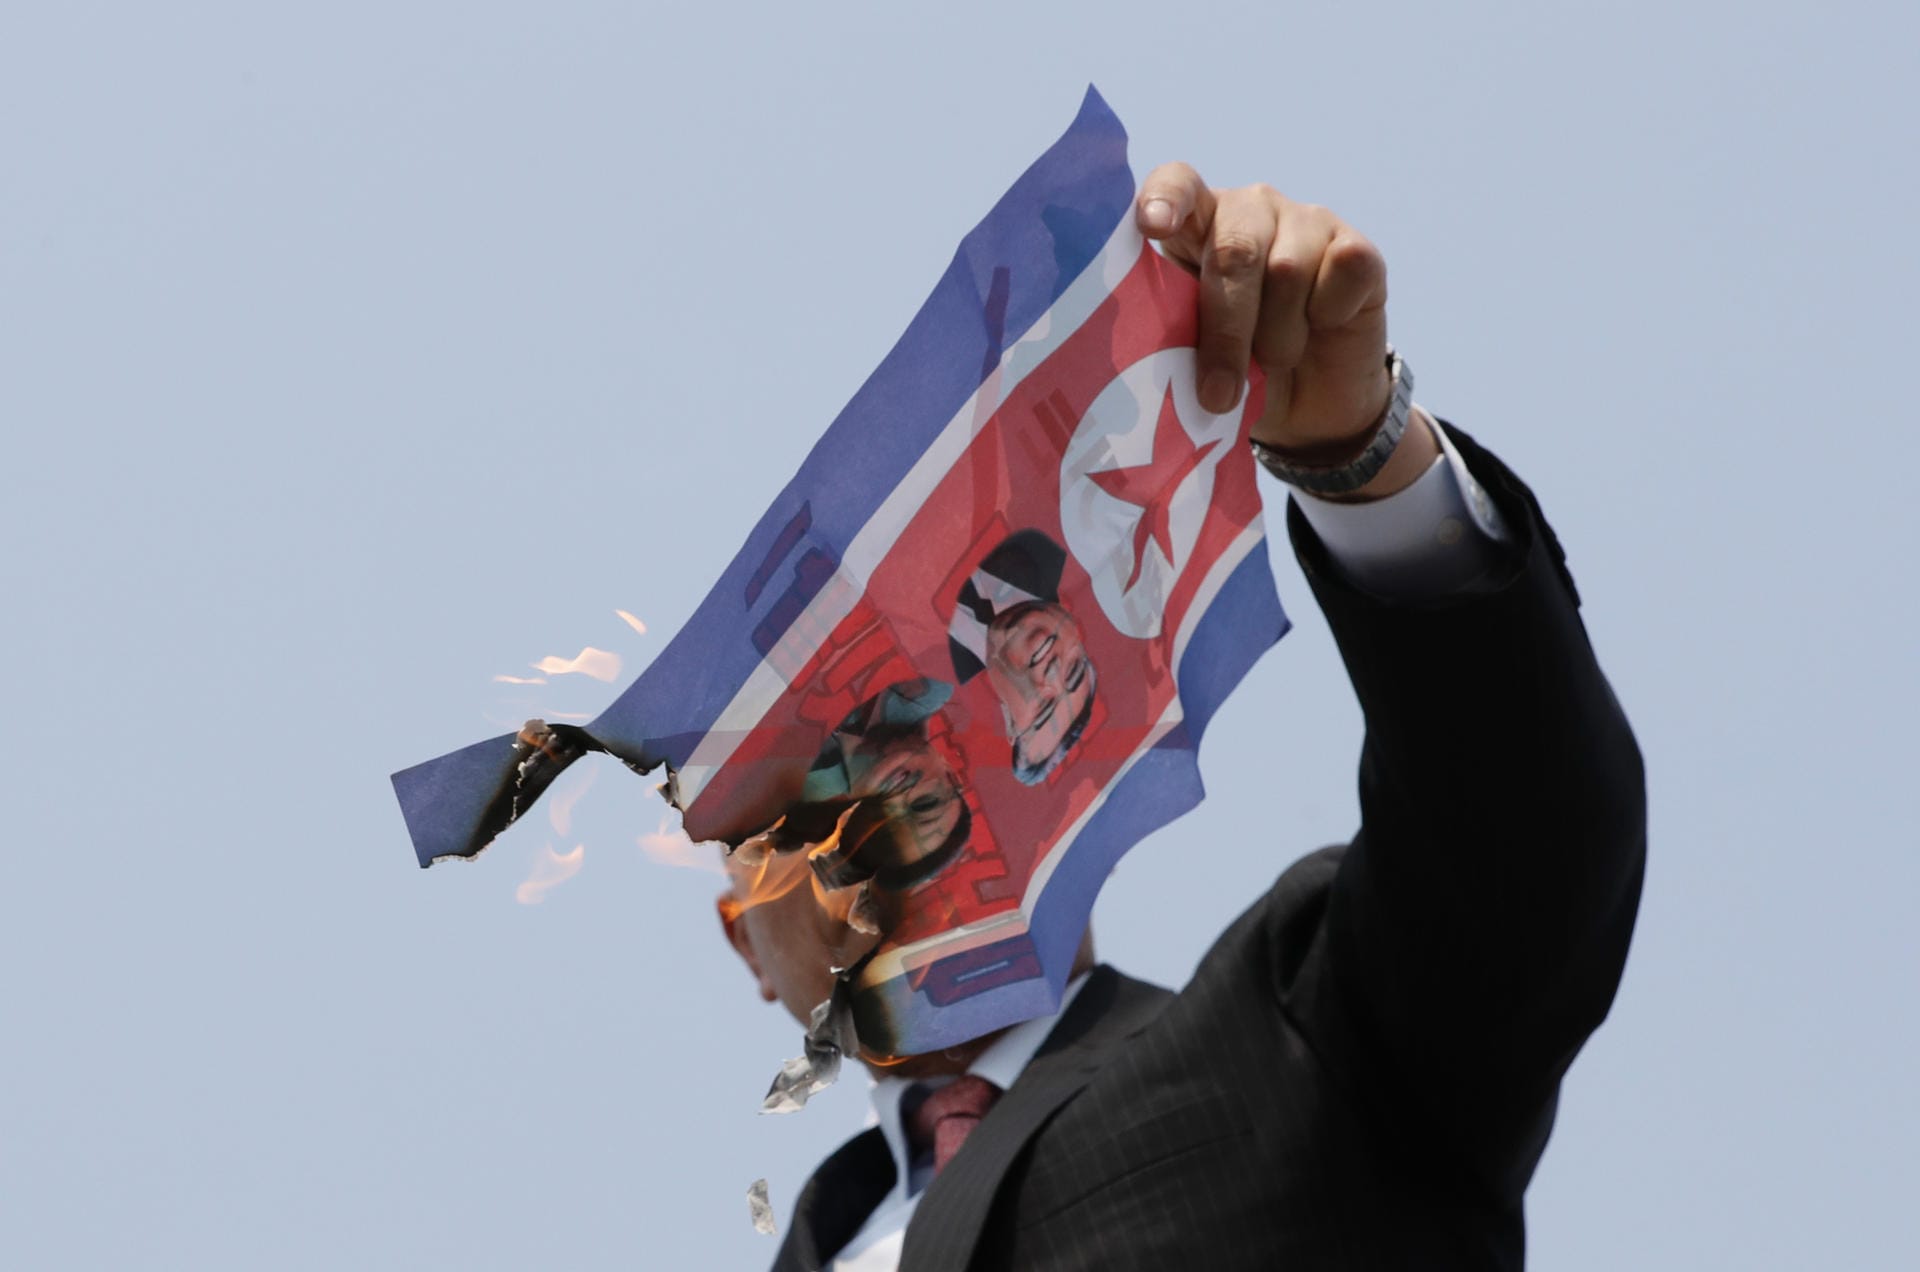 Doch es gab auch Proteste: Aktivisten setzten zwei nordkoreanische Flaggen aus Papier in Brand, auf denen Bilder von Kim Jong Un und dessen verstorbenem Vater und Großvater zu sehen waren. Sie forderten auch den Rücktritt von Moon. Zu gewaltsamen Zwischenfällen kam es nicht. Hunderte Demonstranten versammelten sich in der Nähe des Grenzortes Panmunjom und protestierten gegen die Gespräche zwischen Kim Jong Un und Moon Jae In.